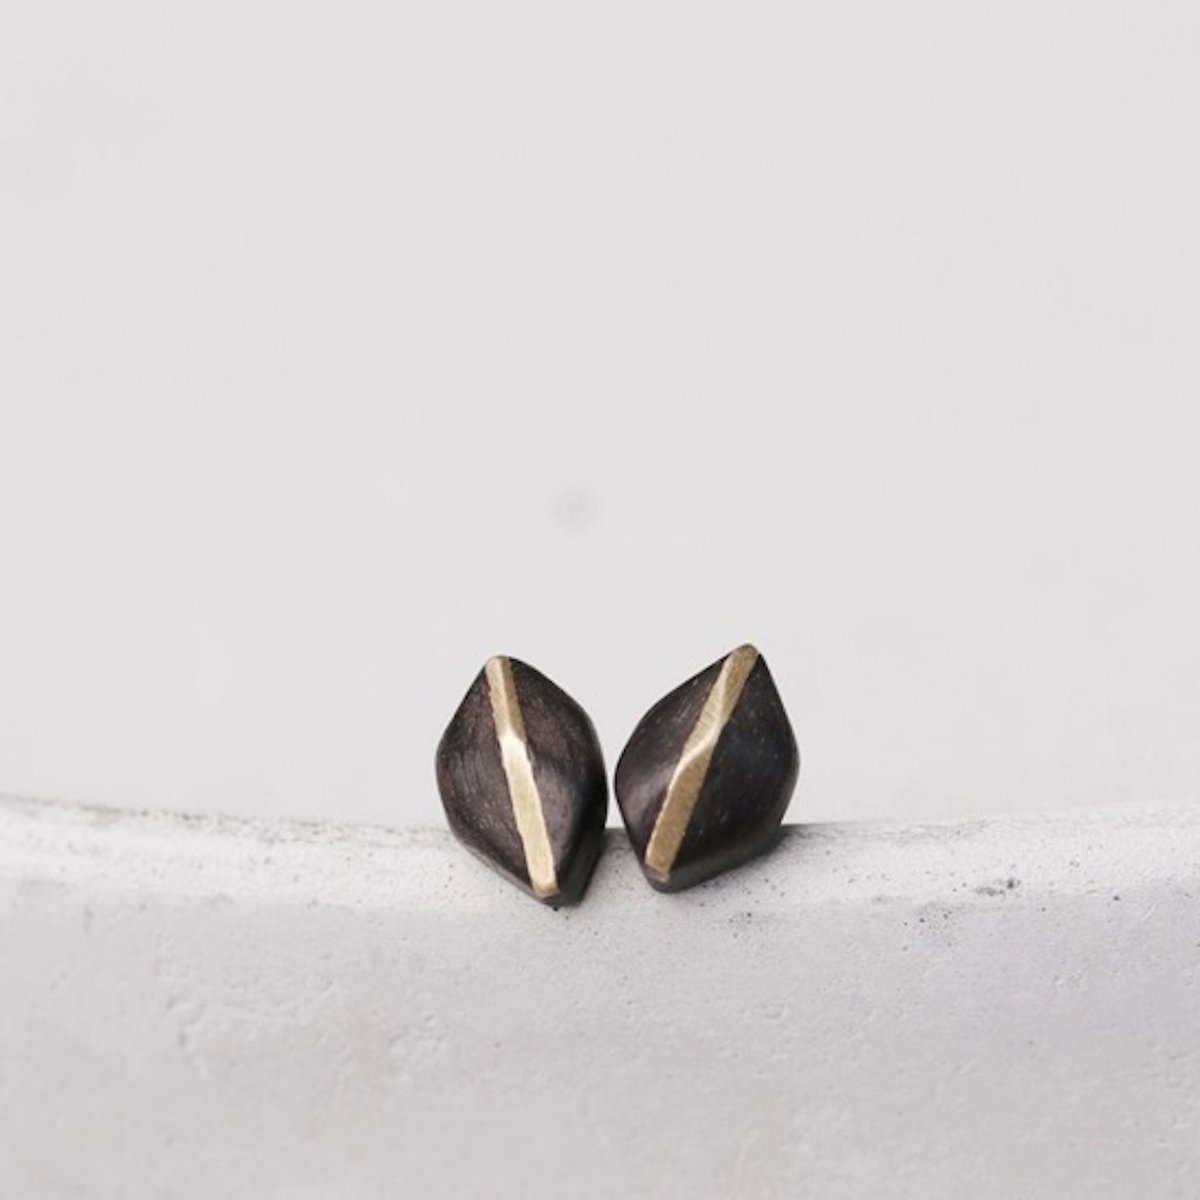 Unieke zwarte sandaalhout bronzen lijn oorknopjes